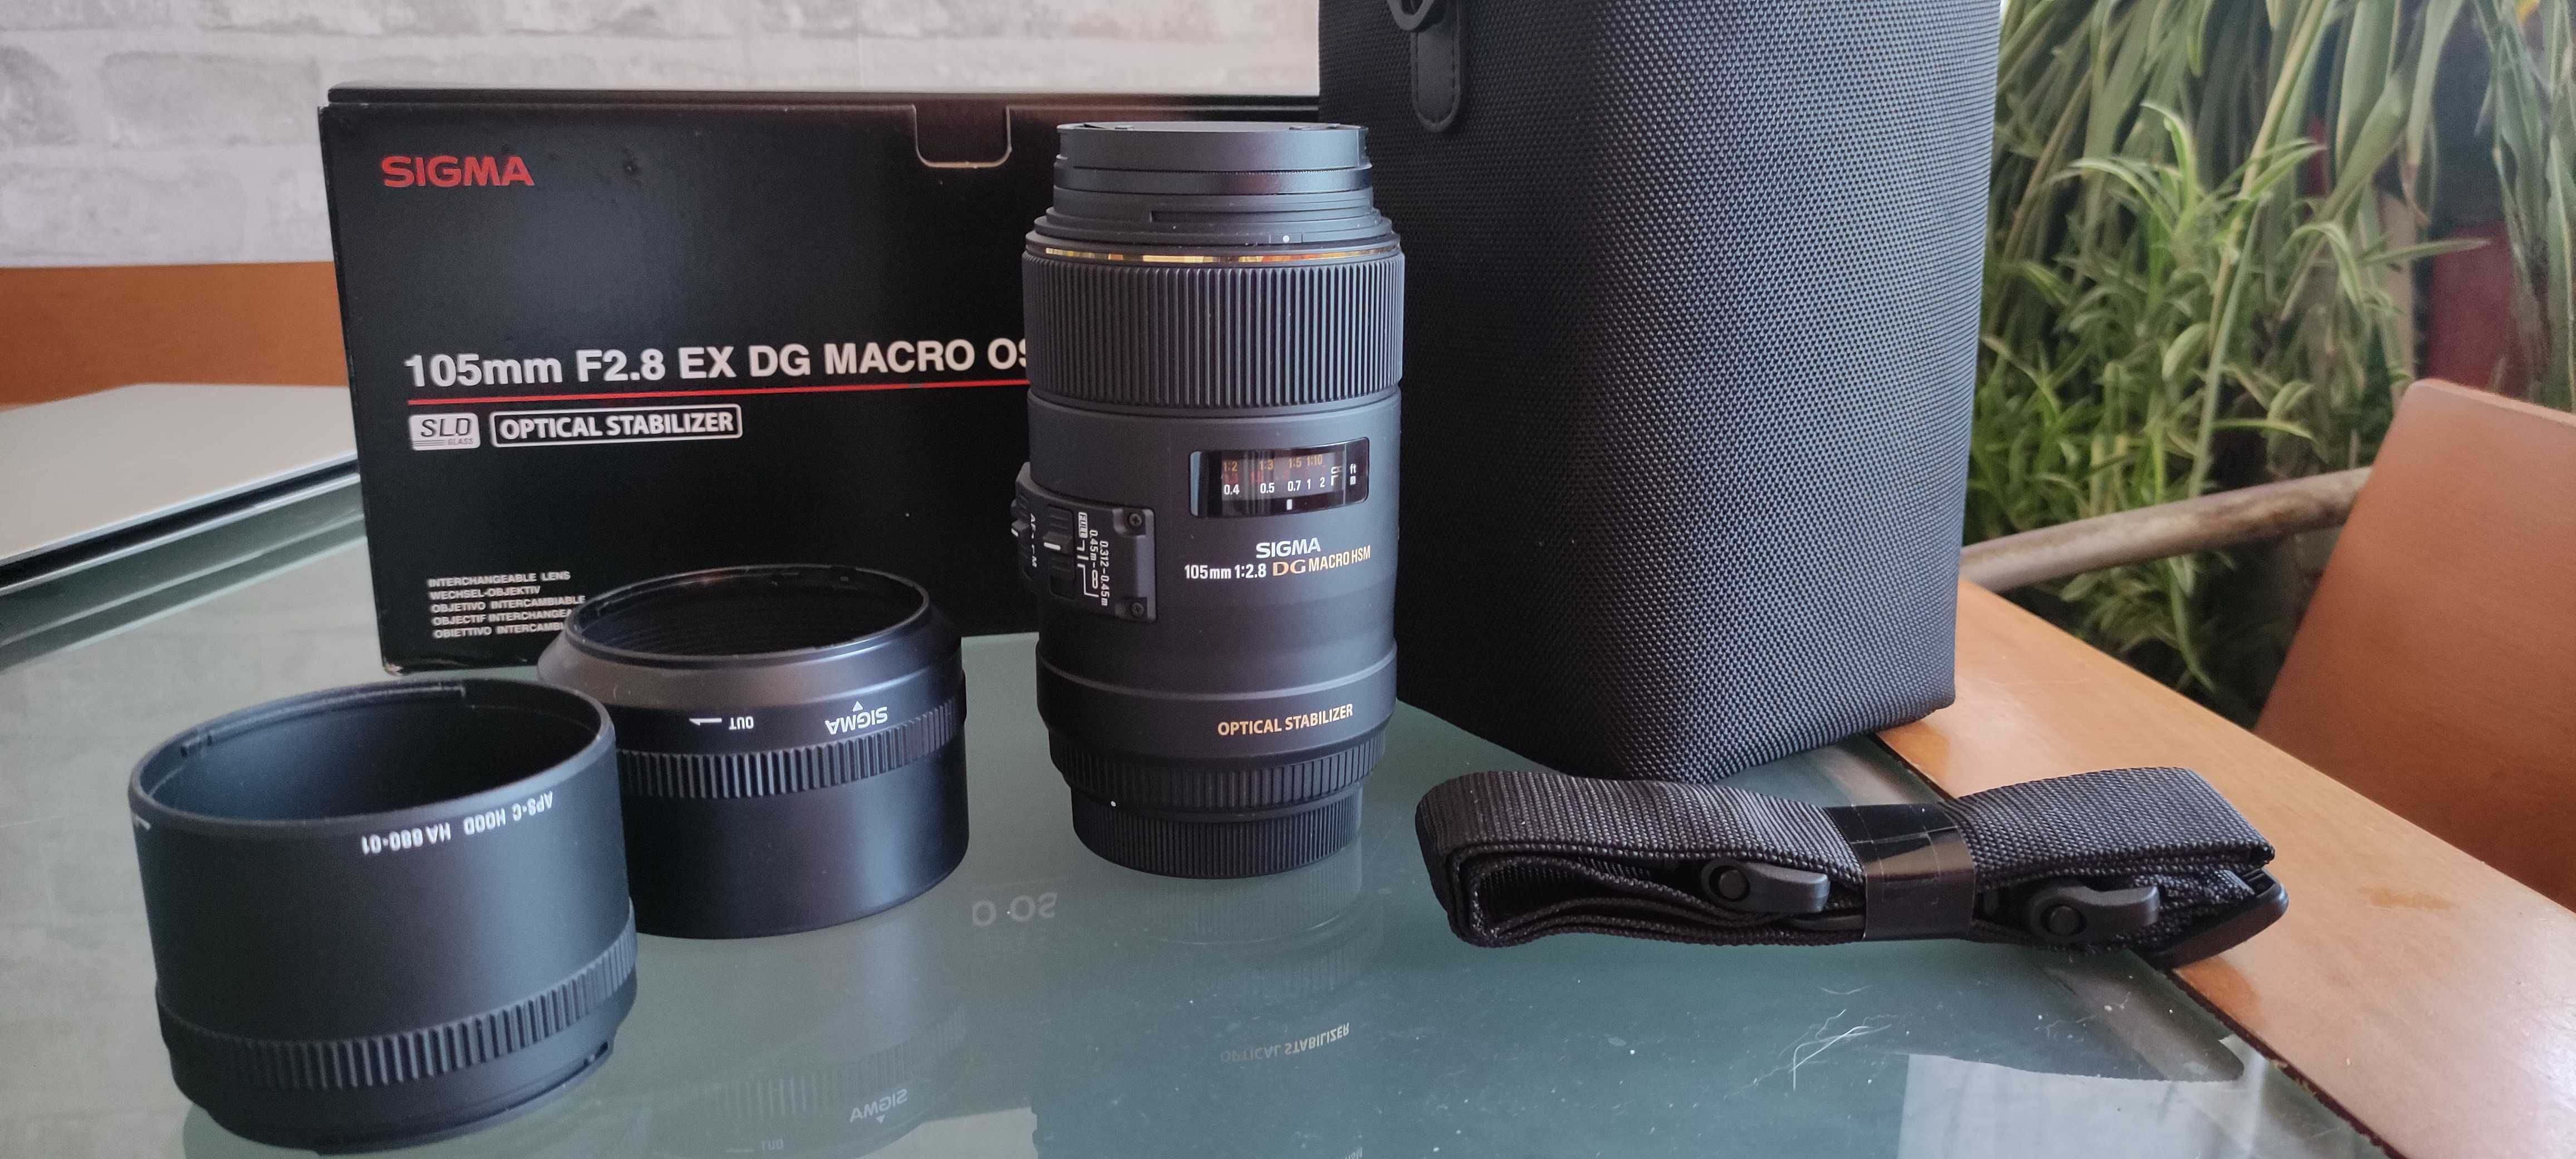 Lente Sigma 105mm F2.8 EX DG Macro OS ( Canon) como nova,oferta filtro